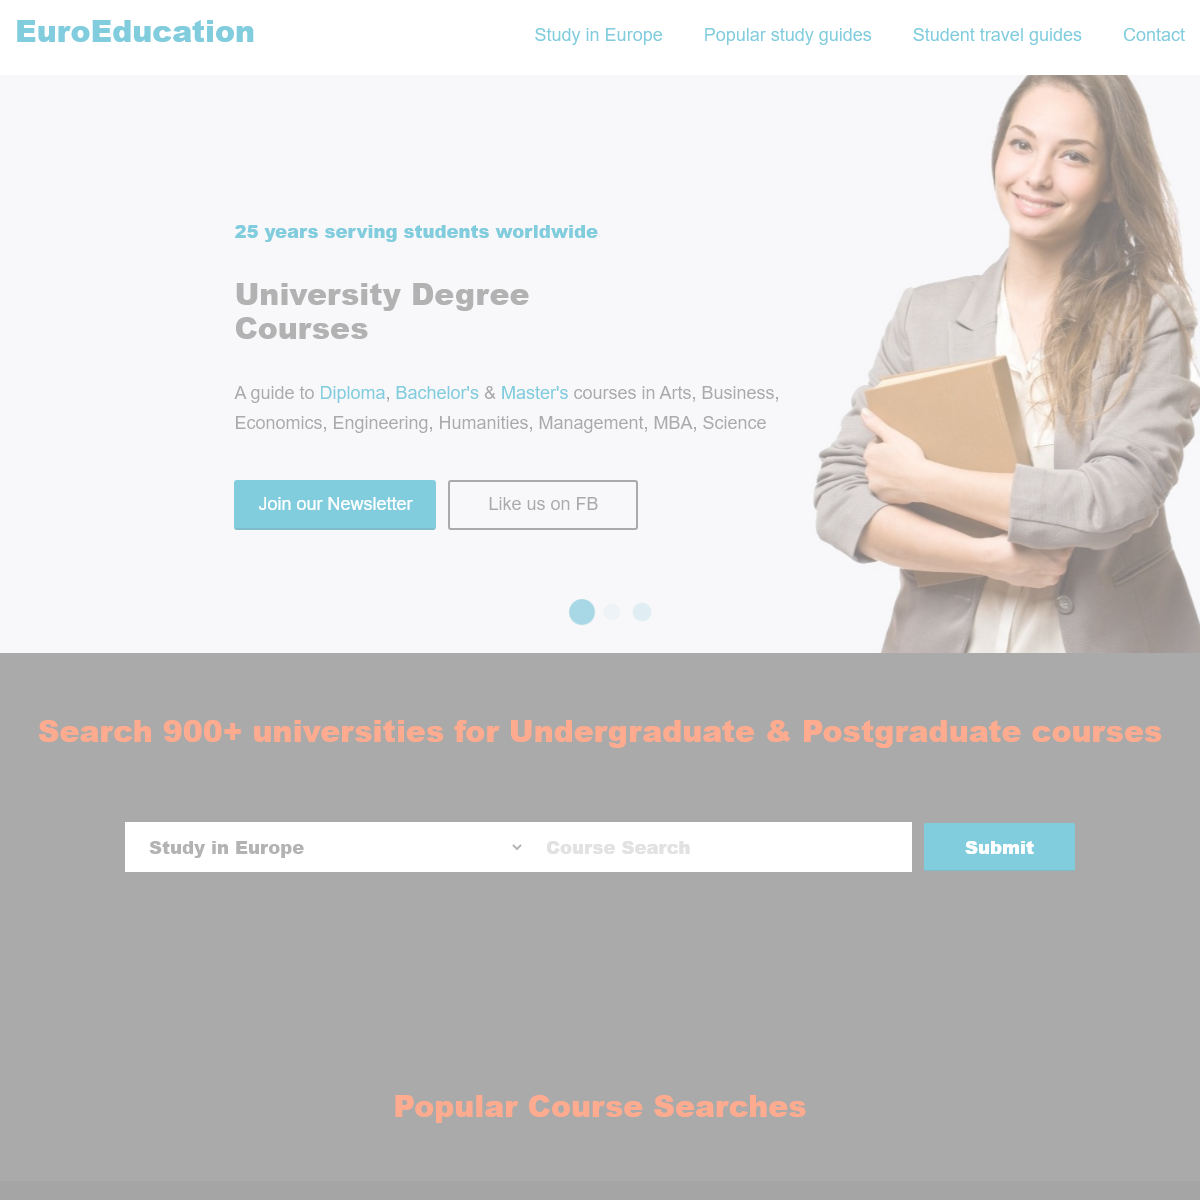 EUROEDUCATION- Postgraduate and Undergraduate Courses in Europe - EuroEducation.net